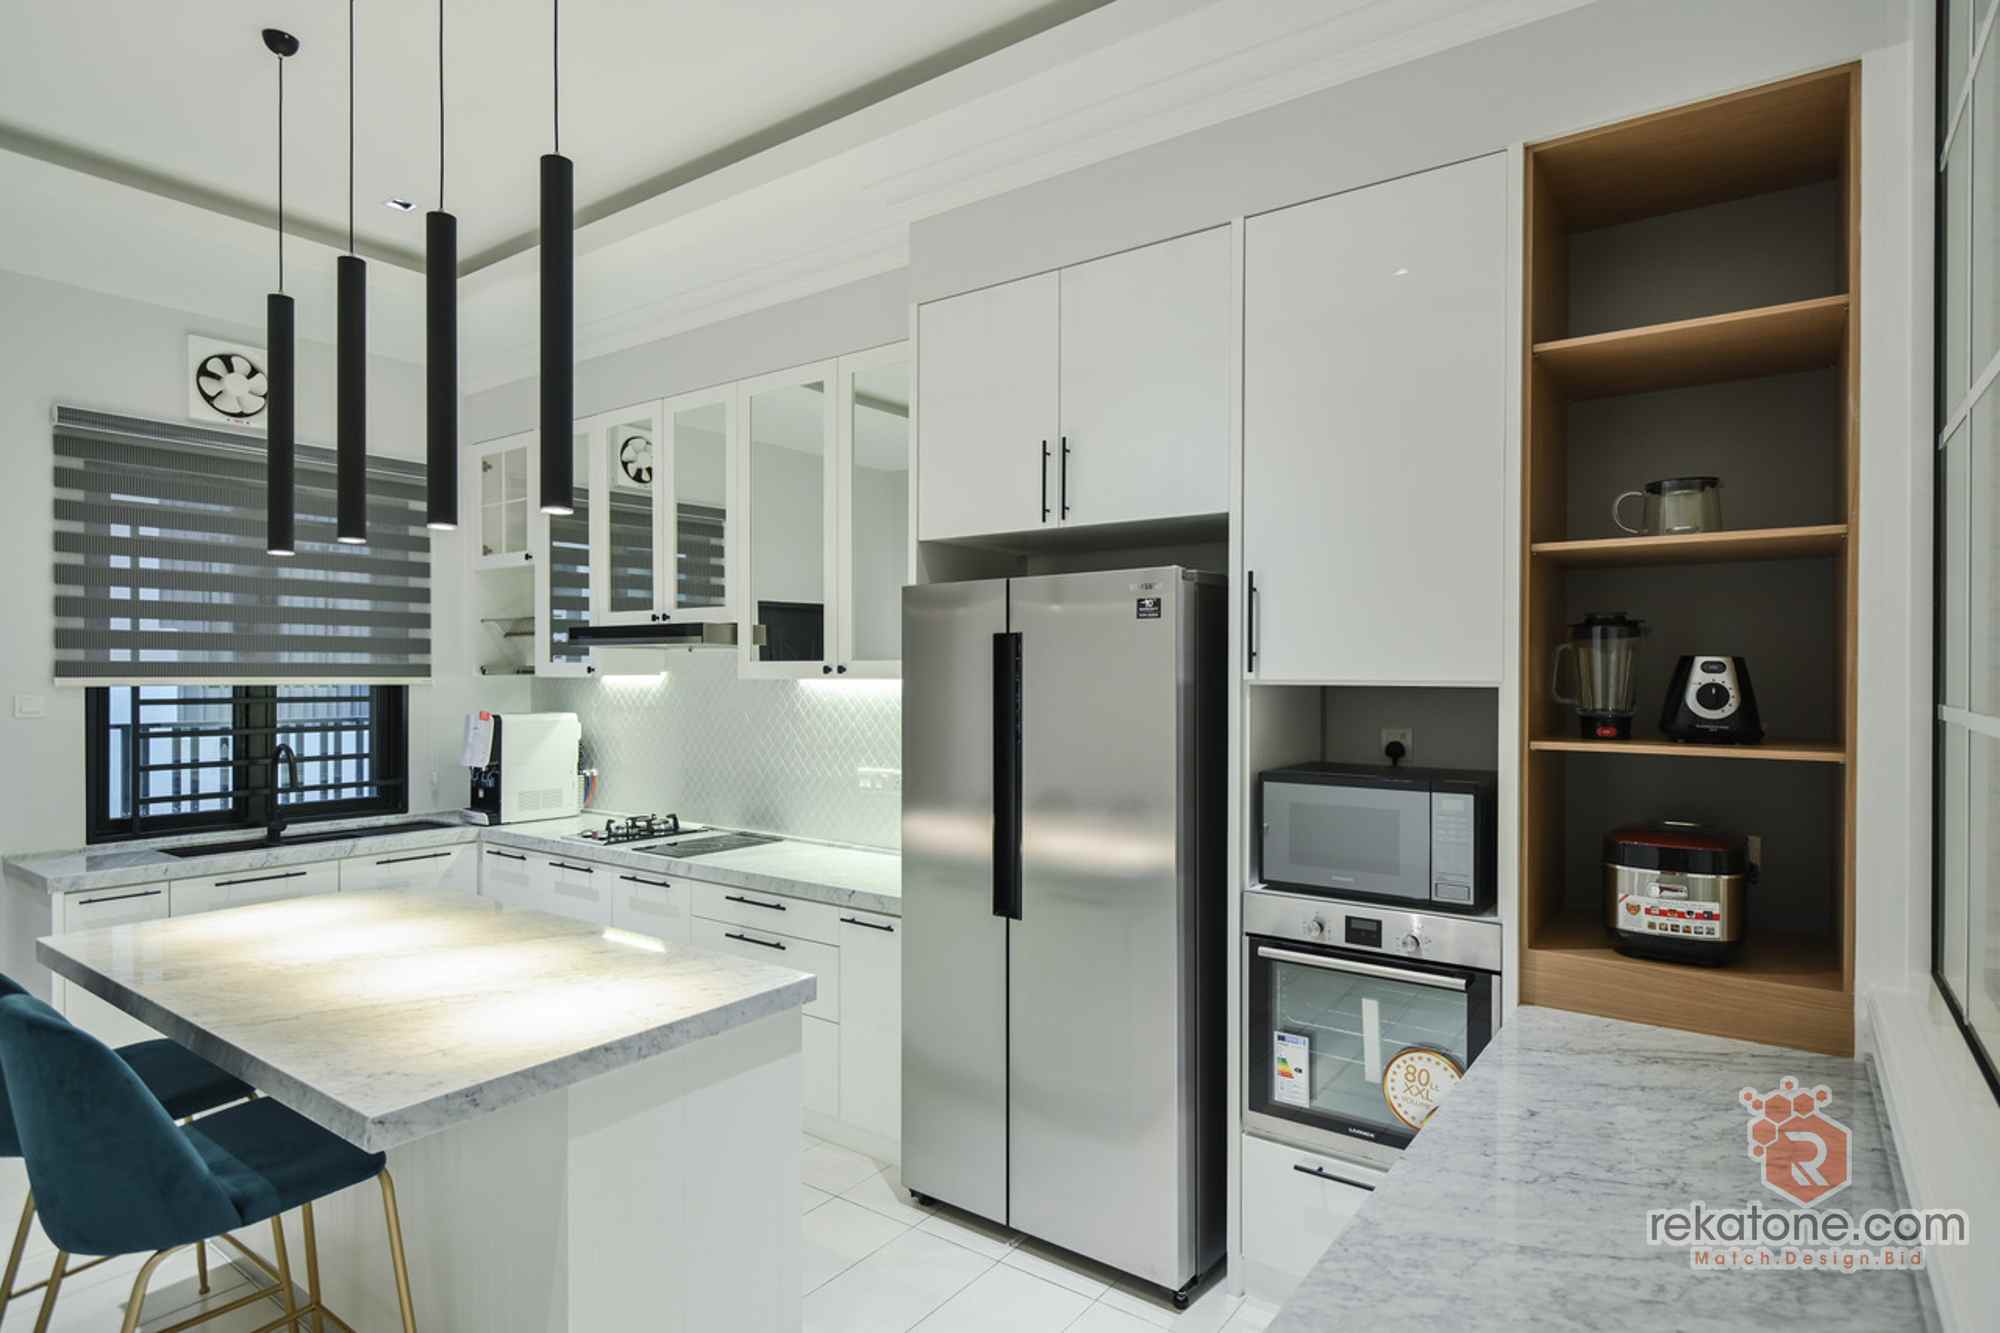 Small Kitchen Design For Condo /Apartment Malaysia 20   rekatone.com